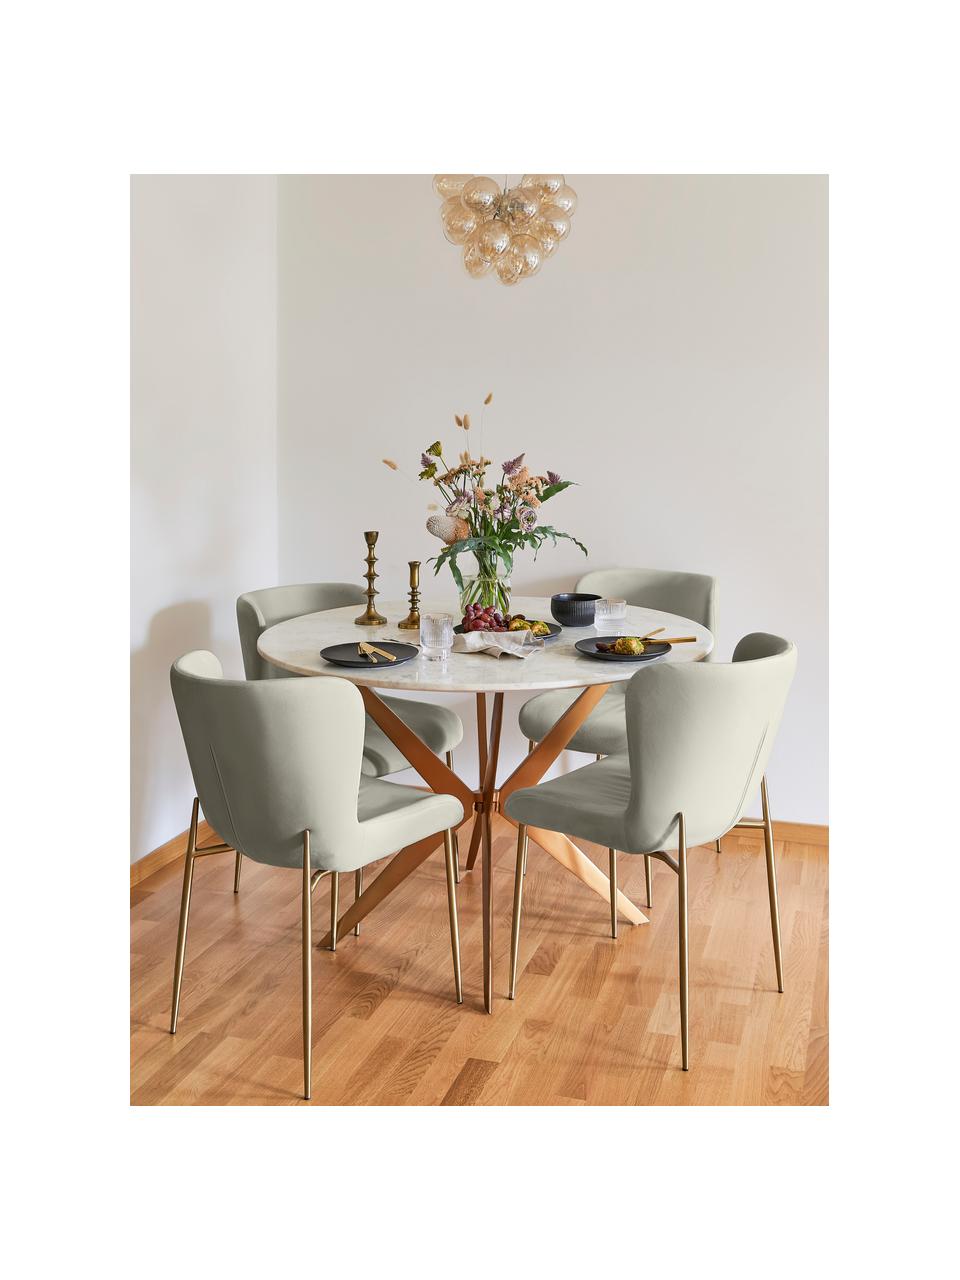 Fluwelen stoel Tess in zilvergrijs, Bekleding: fluweel (polyester), Poten: gepoedercoat metaal, Fluweel zilvergrijs, goudkleurig, B 49 x H 84 cm